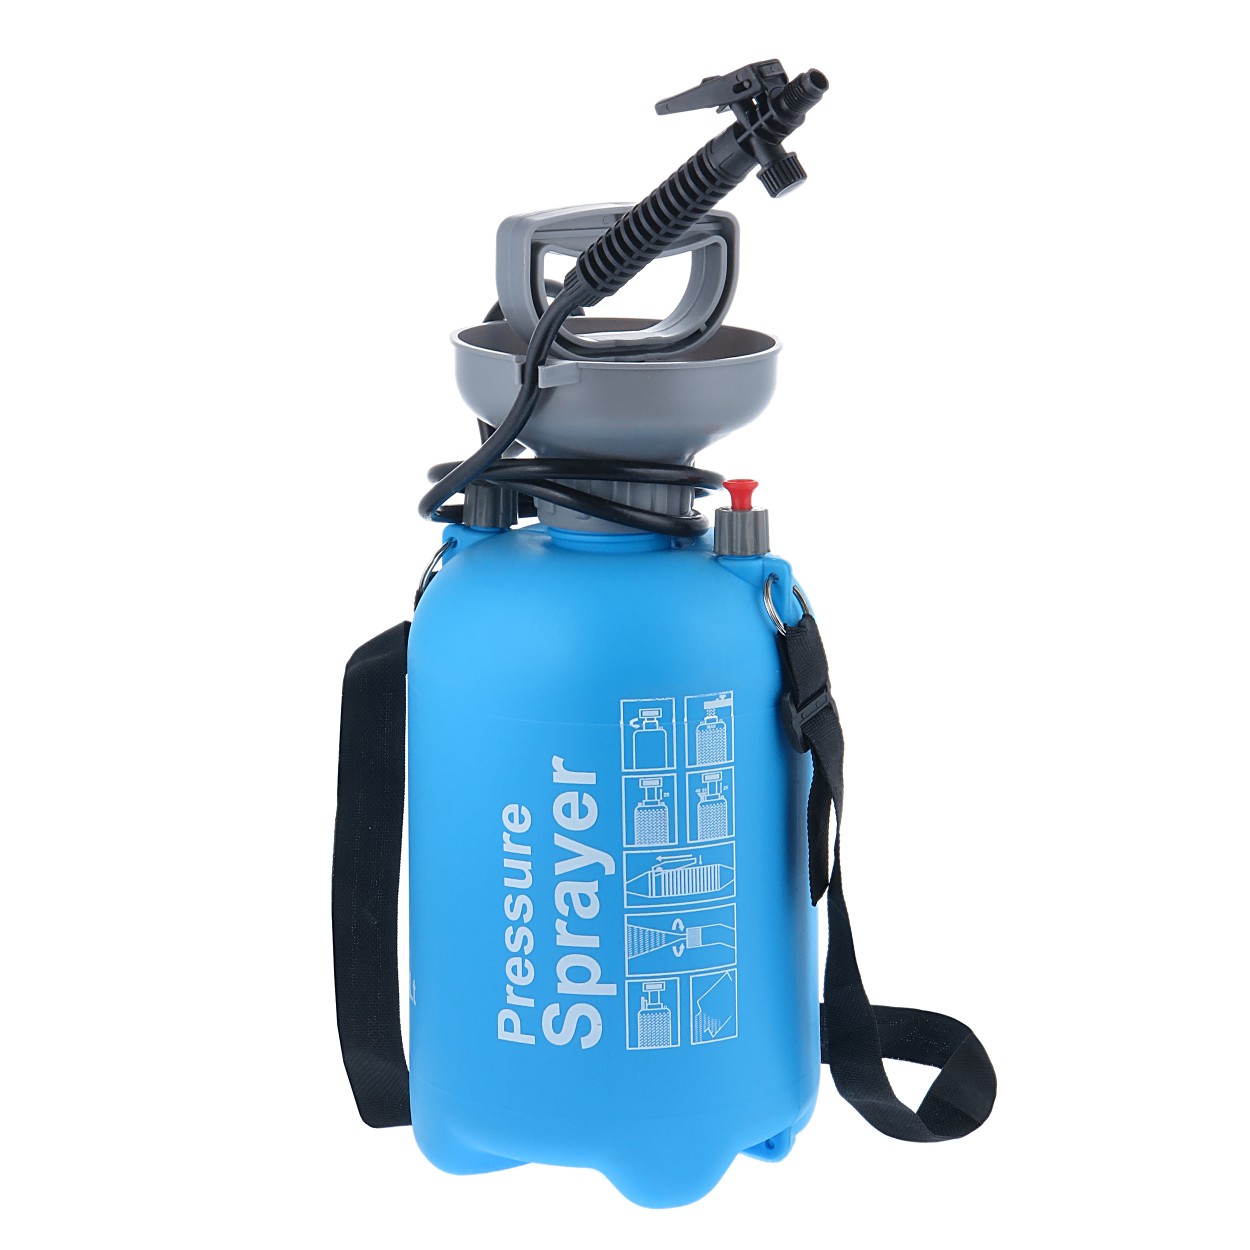 سمپاش مدل 2020 Pressure Sprayer ظرفیت 11 لیتر